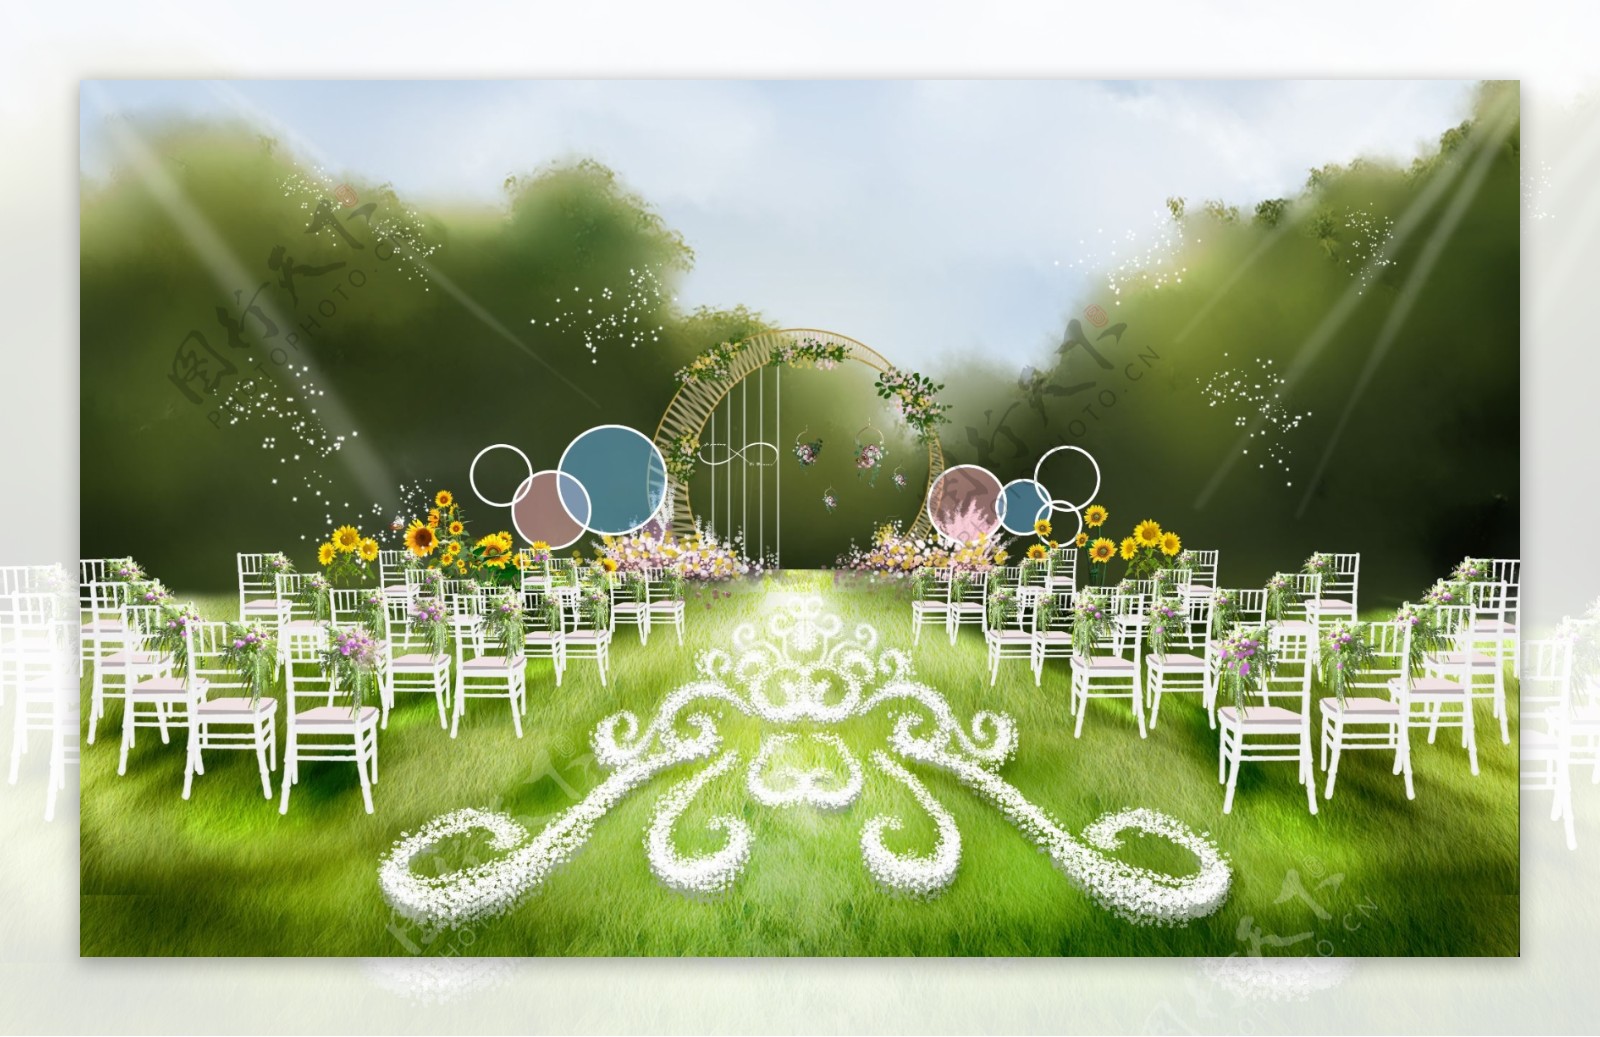 粉蓝色棒棒糖主题户外草坪婚礼效果图